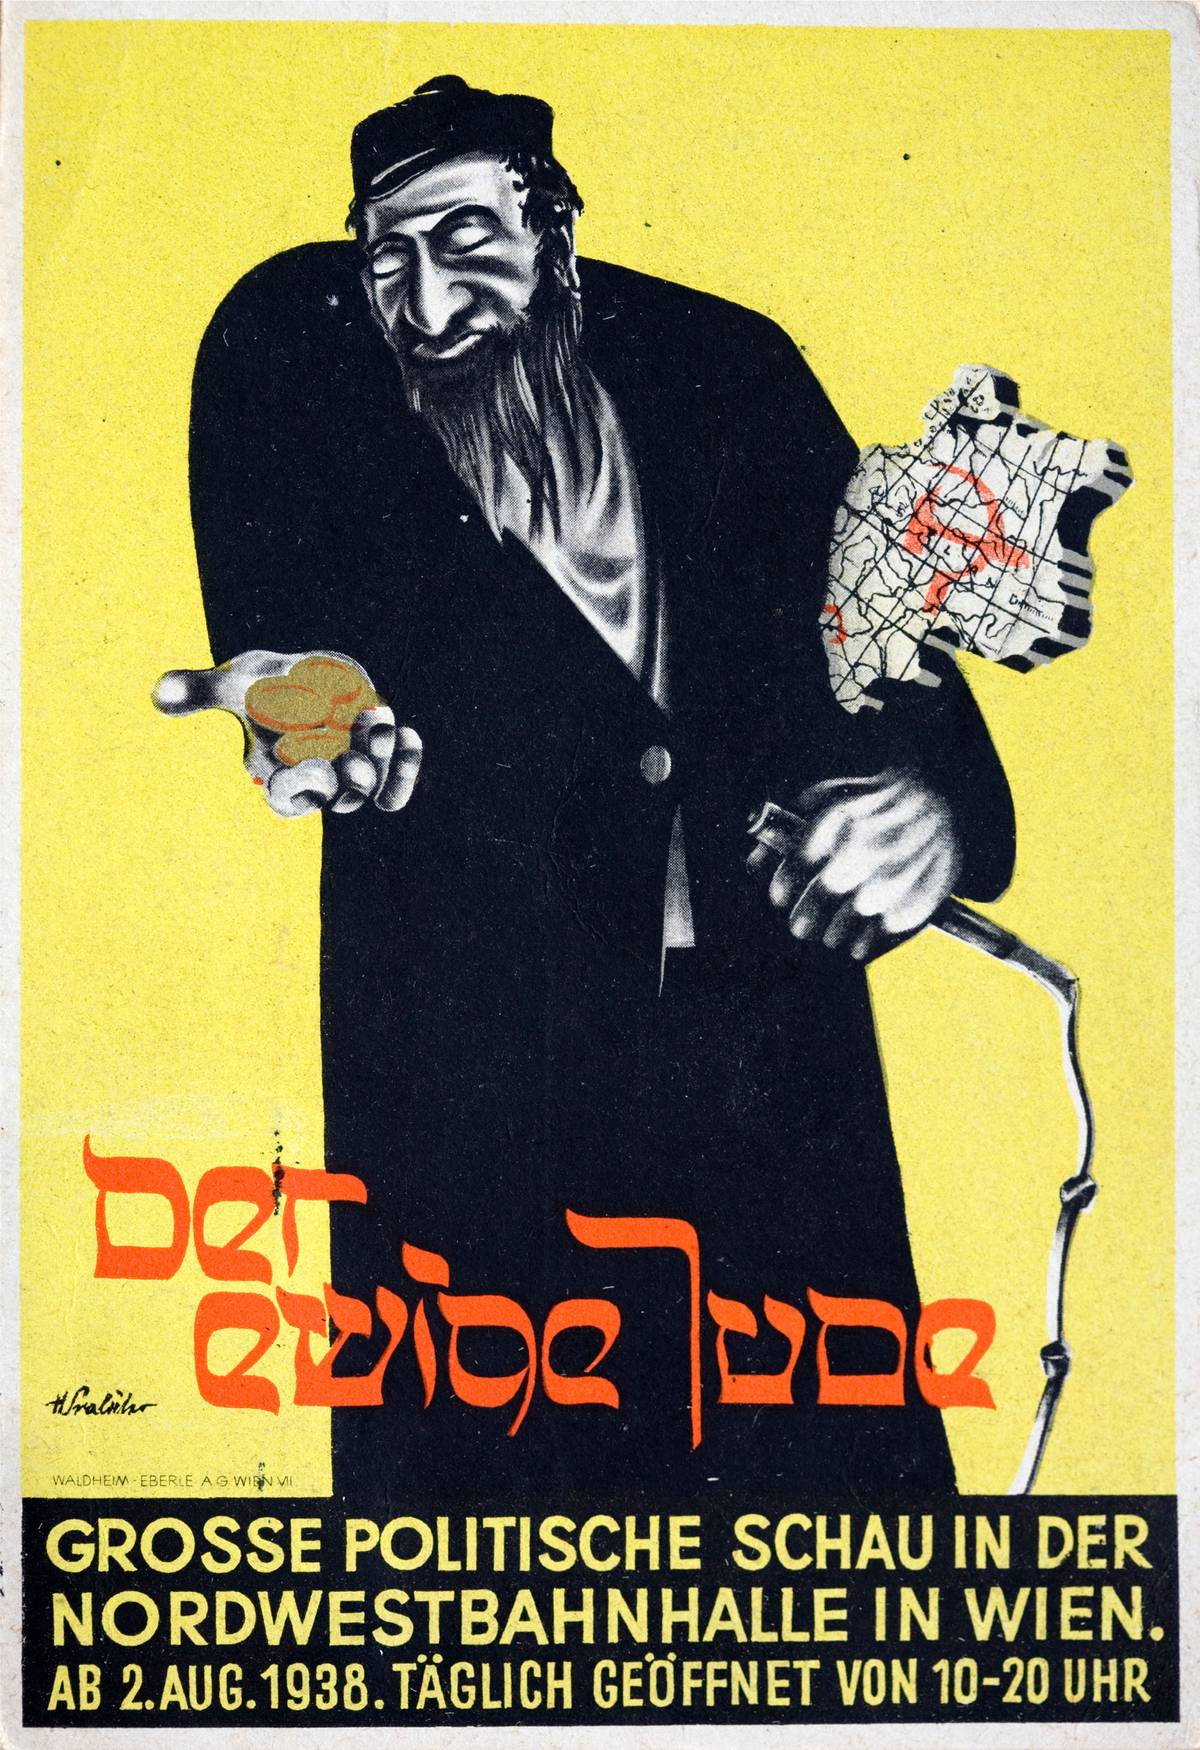 Préservées sous le couvert des idéologies modernes, les préjugés et les passions anti-juifs avaient tendance à devenir encore plus radicales que dans leur cadre théologique d'origine. Publicité pour l'exposition antisémite à Vienne, 1938.